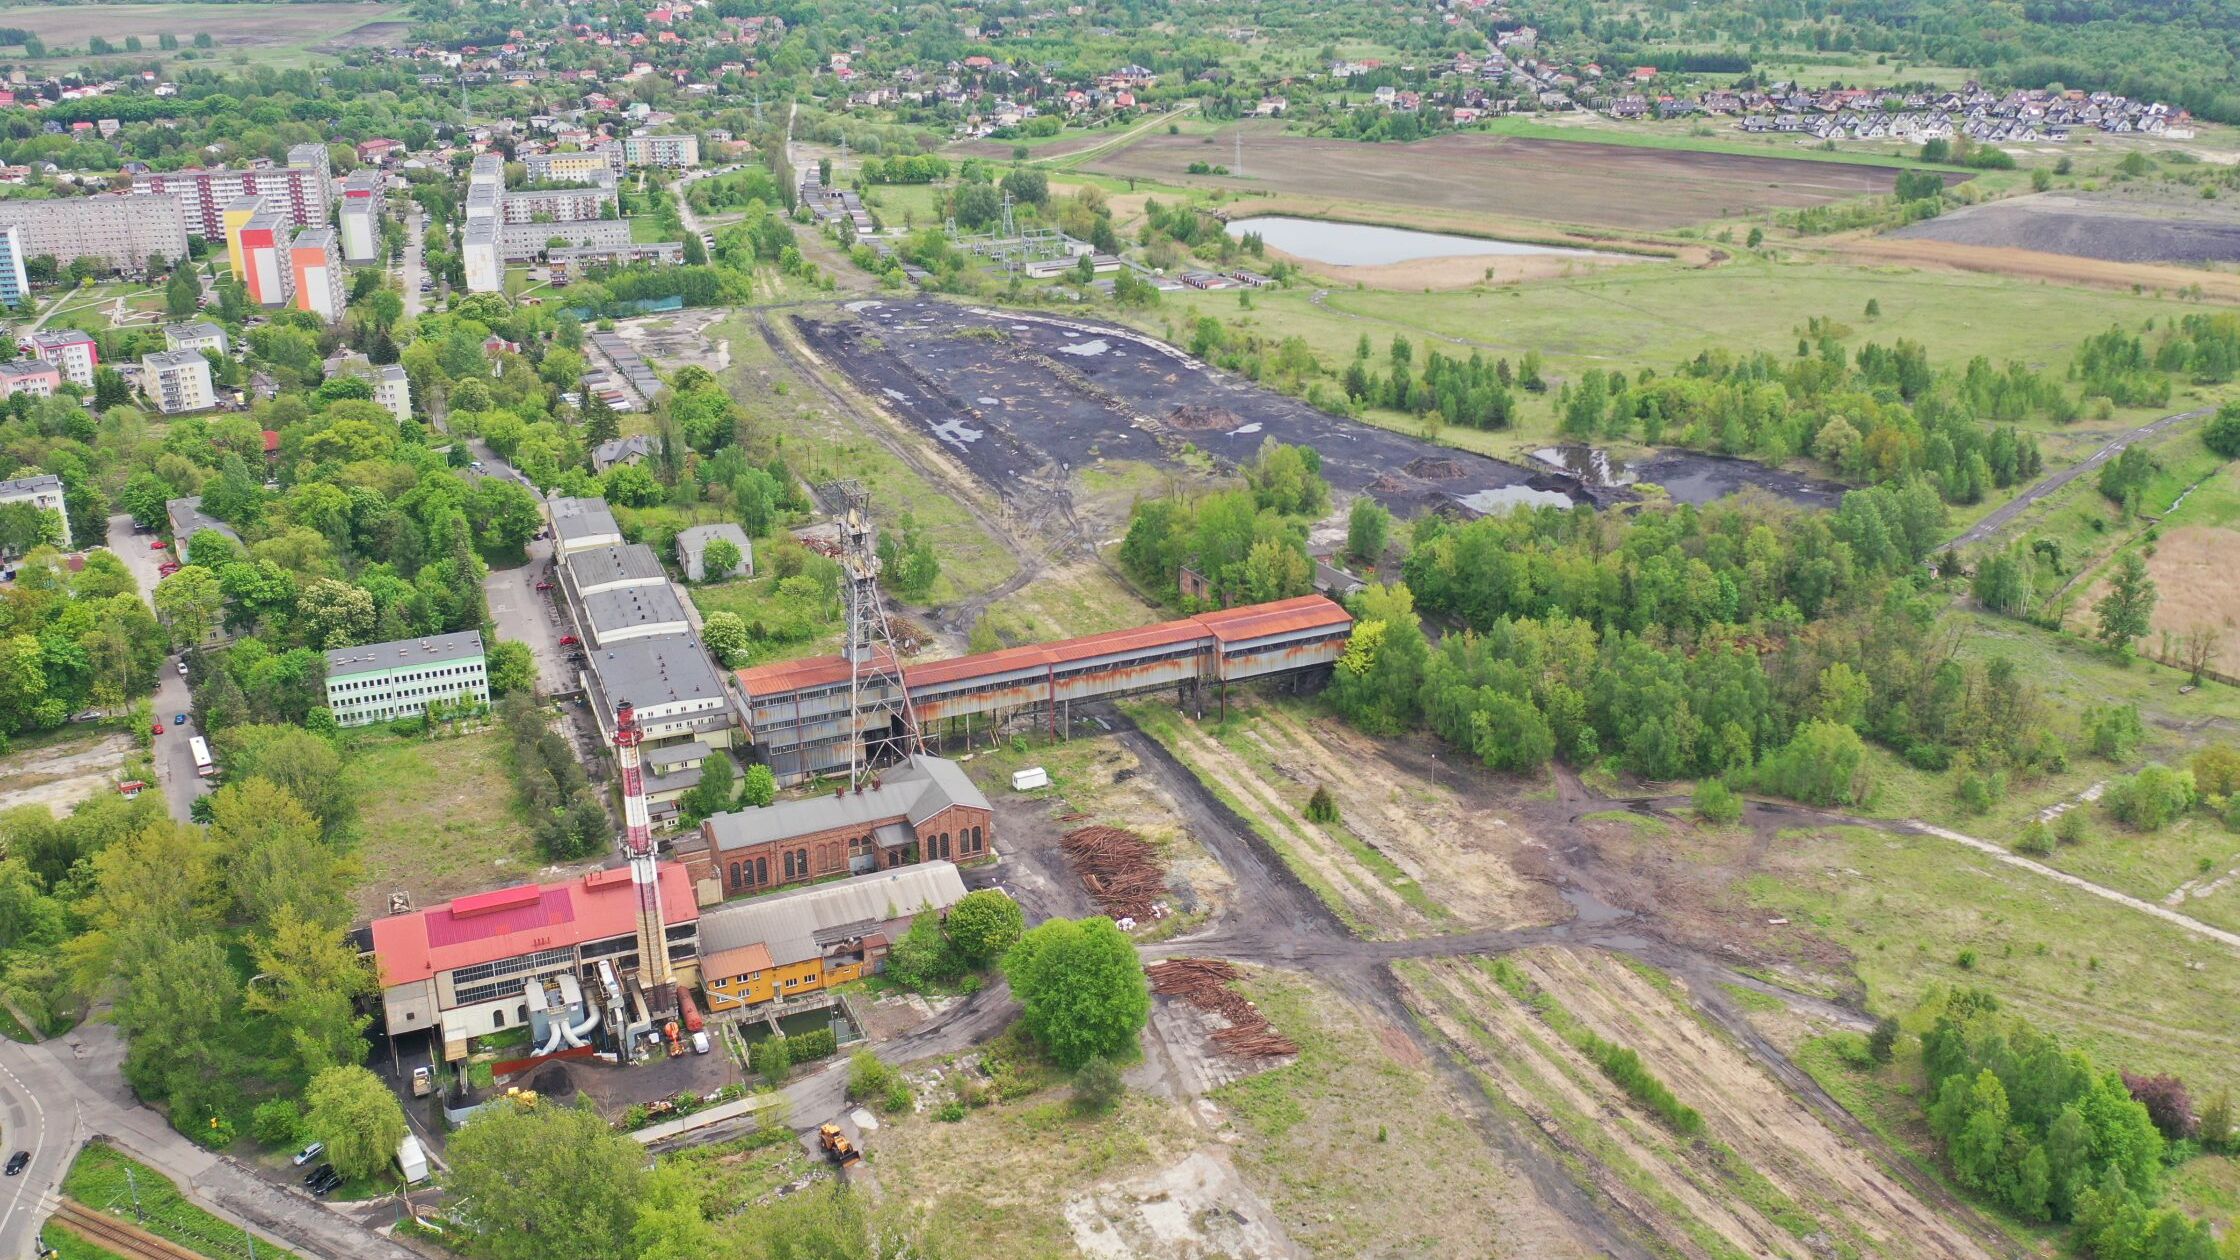 Kazimierz-Juliusz Coal Mine